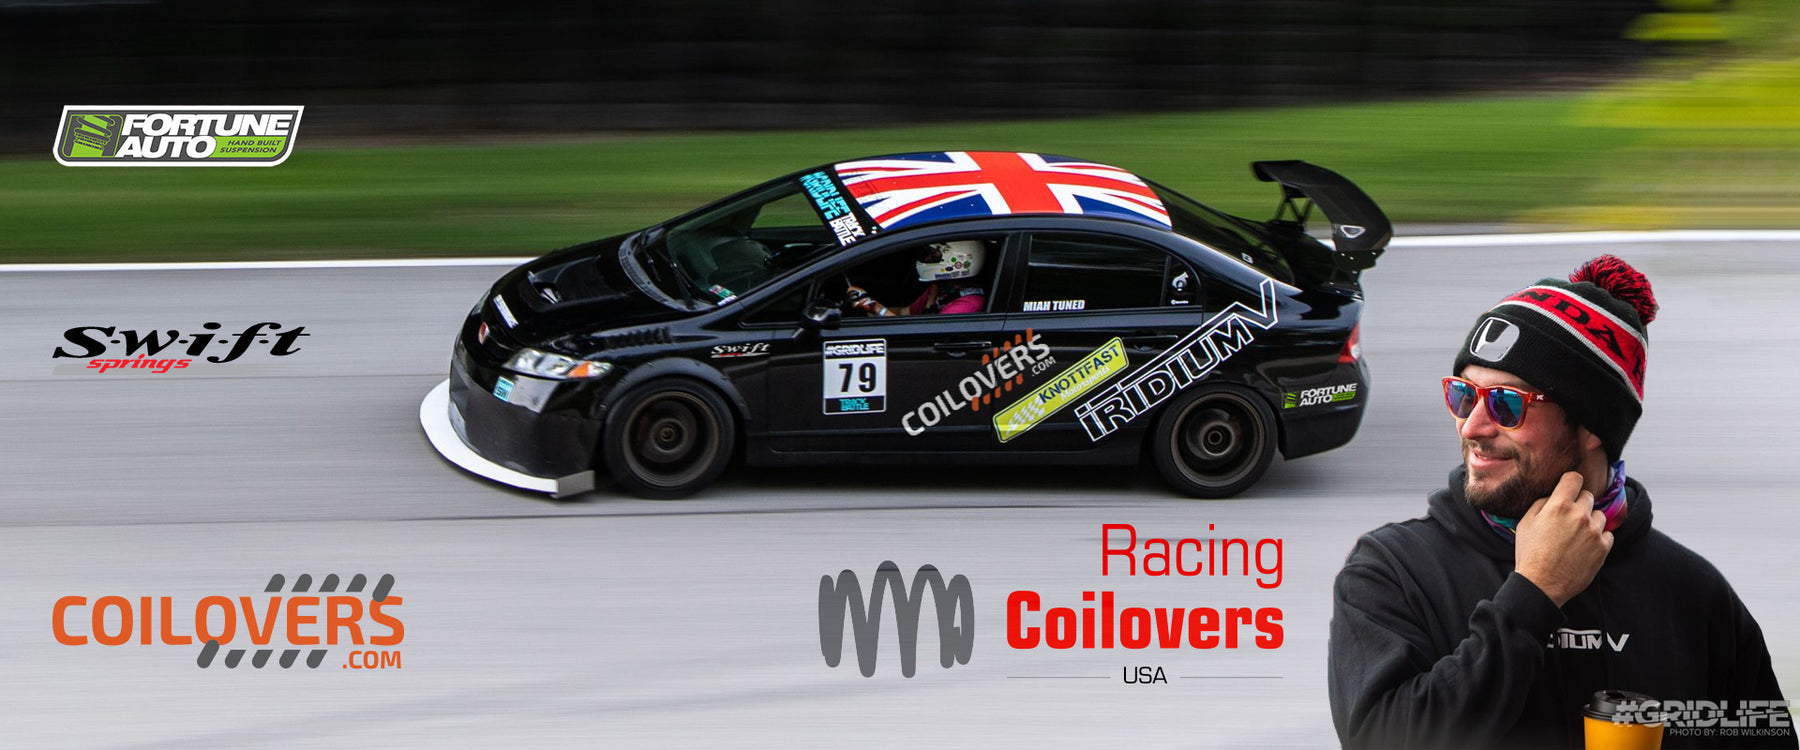 Coilovers.com a new sponsor for Pennsylvania driver Nick Kohrs